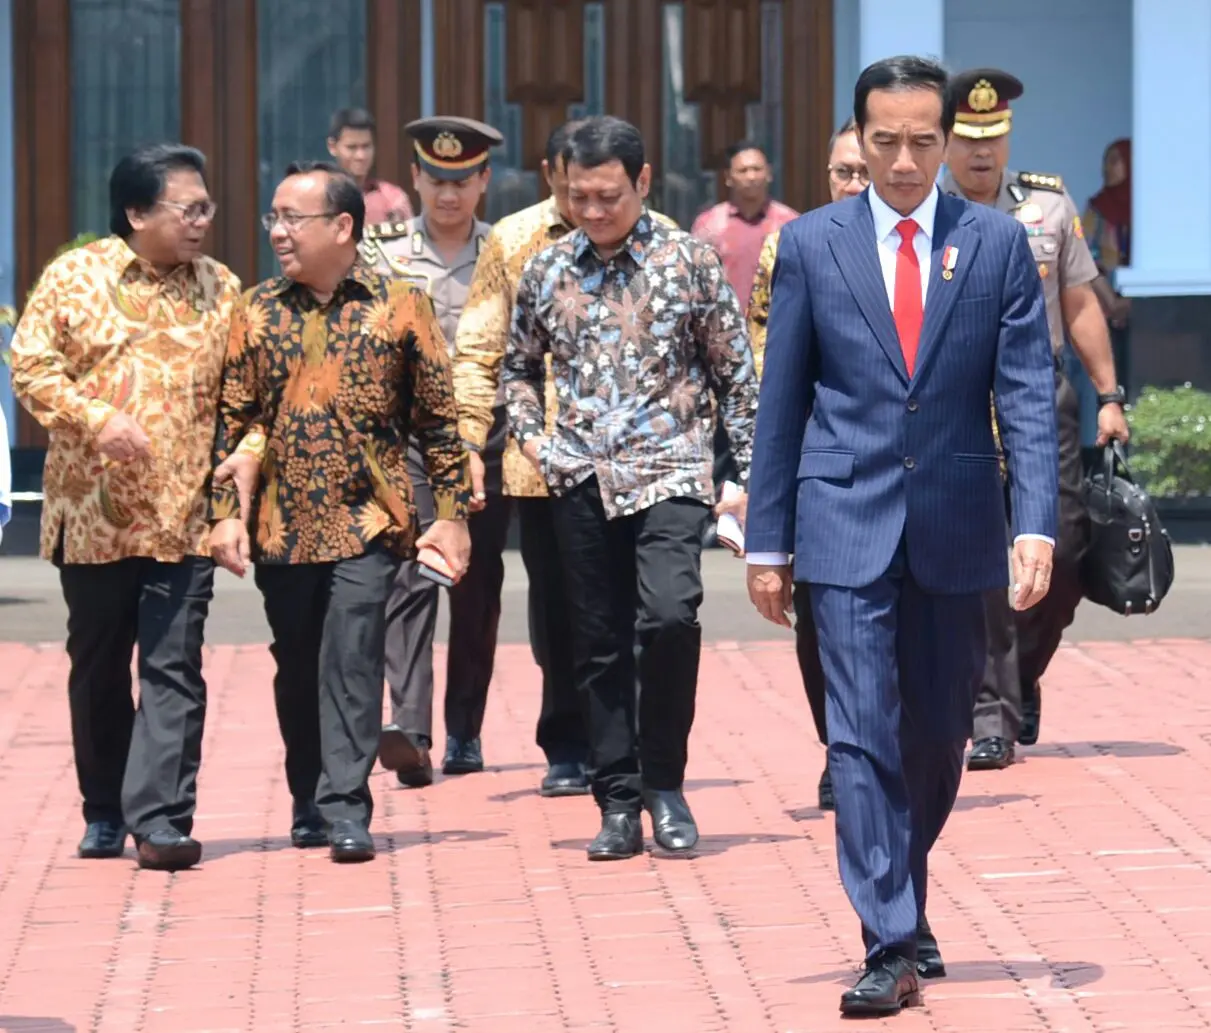 Presiden Joko Widodo atau Jokowi. (Liputan6.com/Lizsa Egeham)